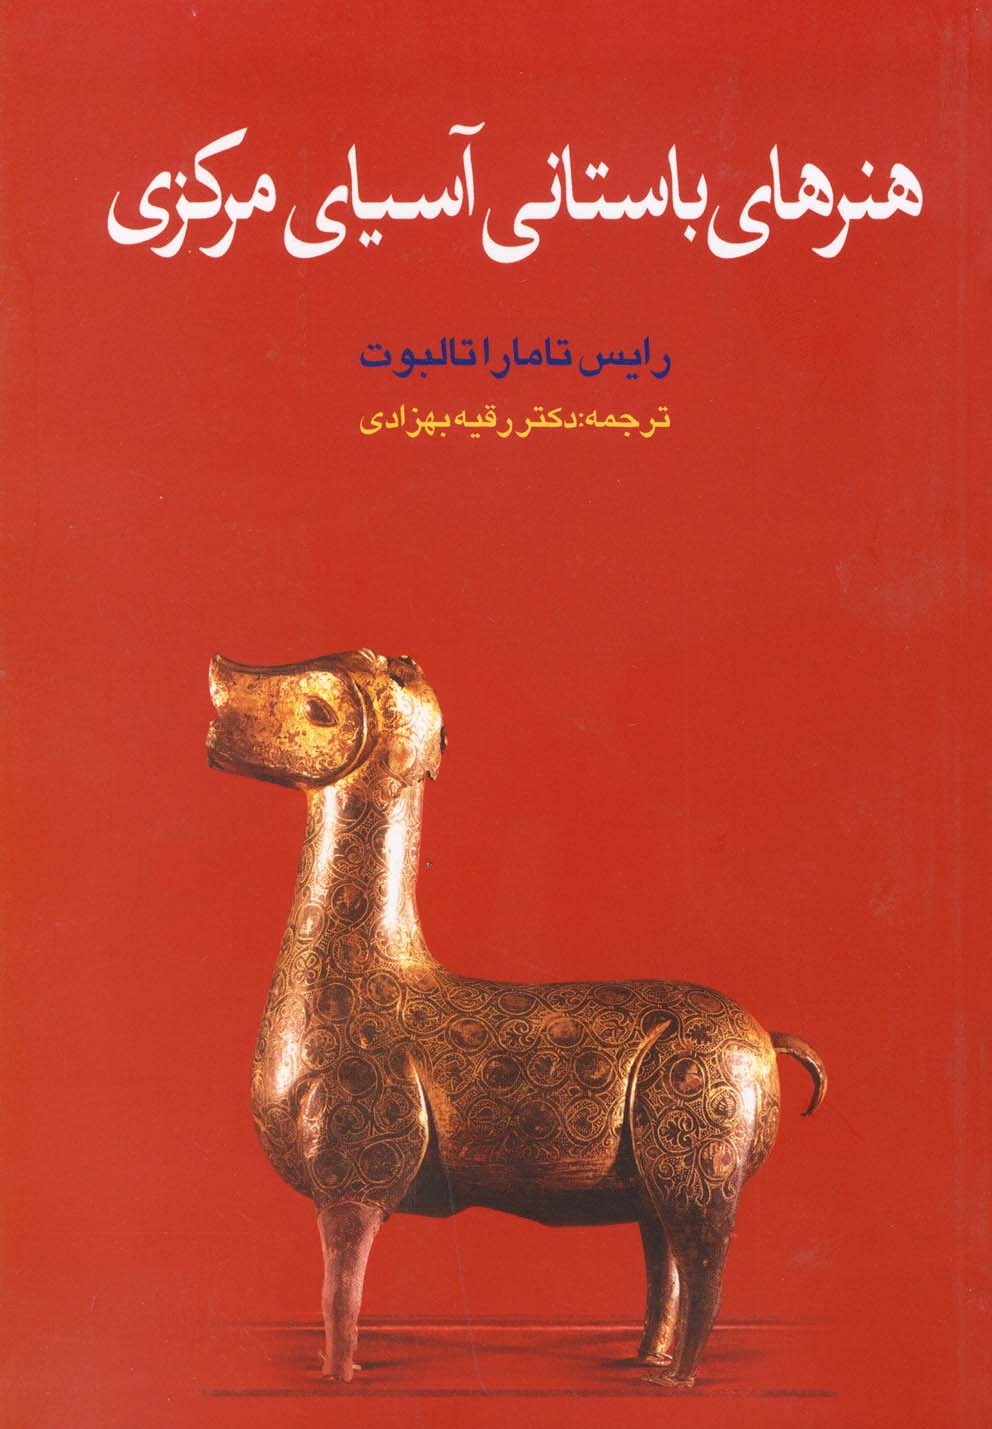  کتاب هنرهای باستانی آسیای مرکزی